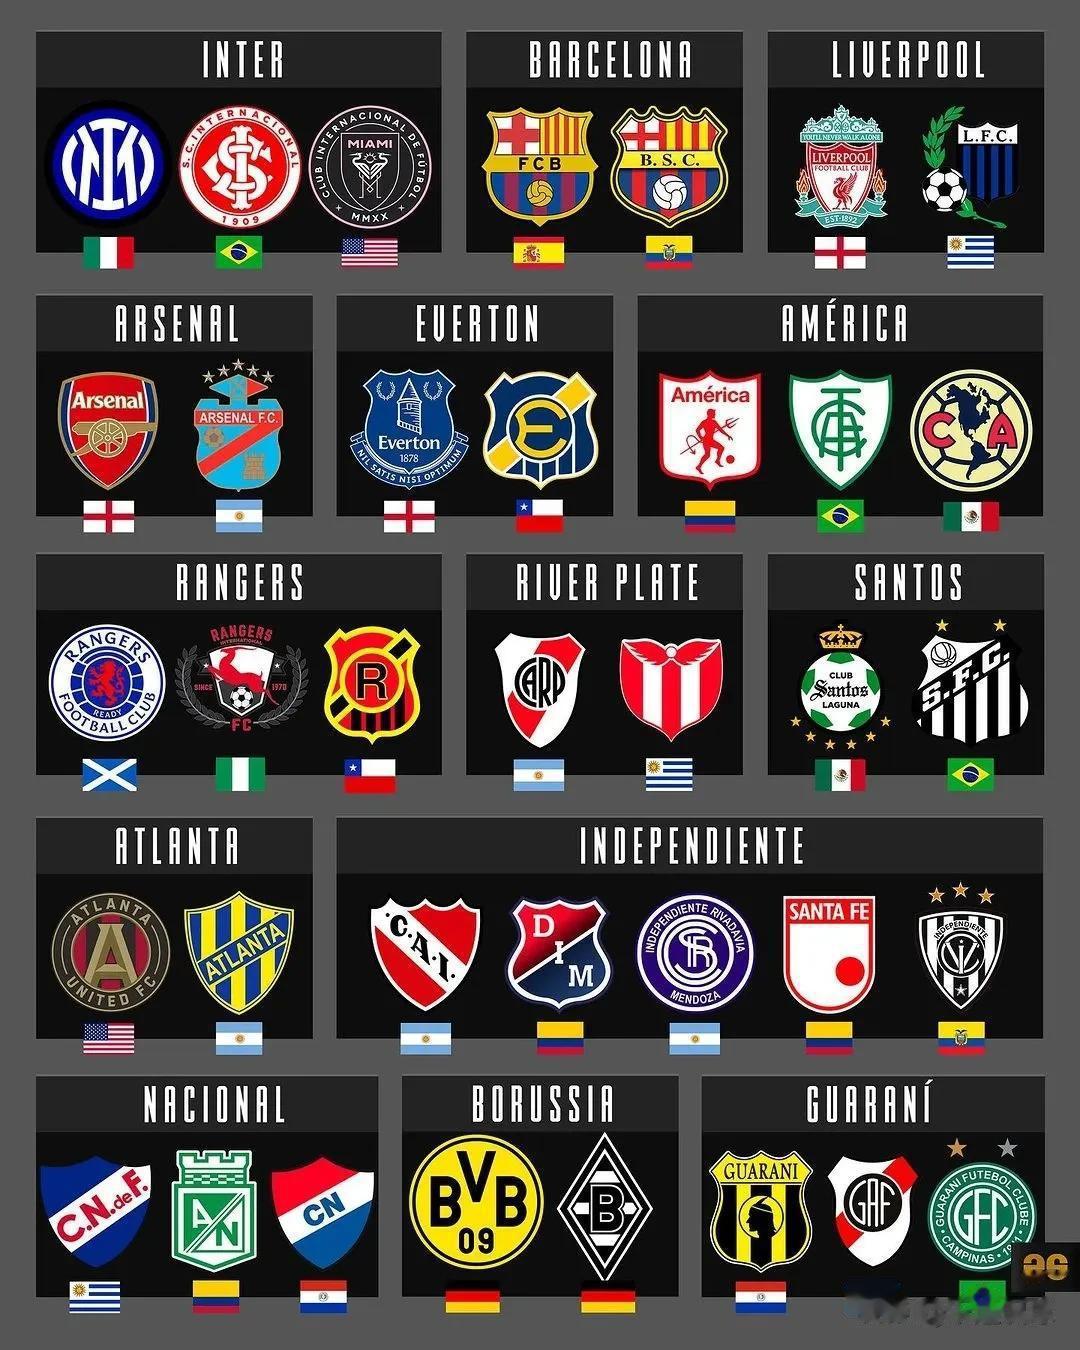 国际足坛中，重名的俱乐部有多少？厄瓜多尔也有叫巴塞罗那的俱乐部，乌拉圭也有叫利物